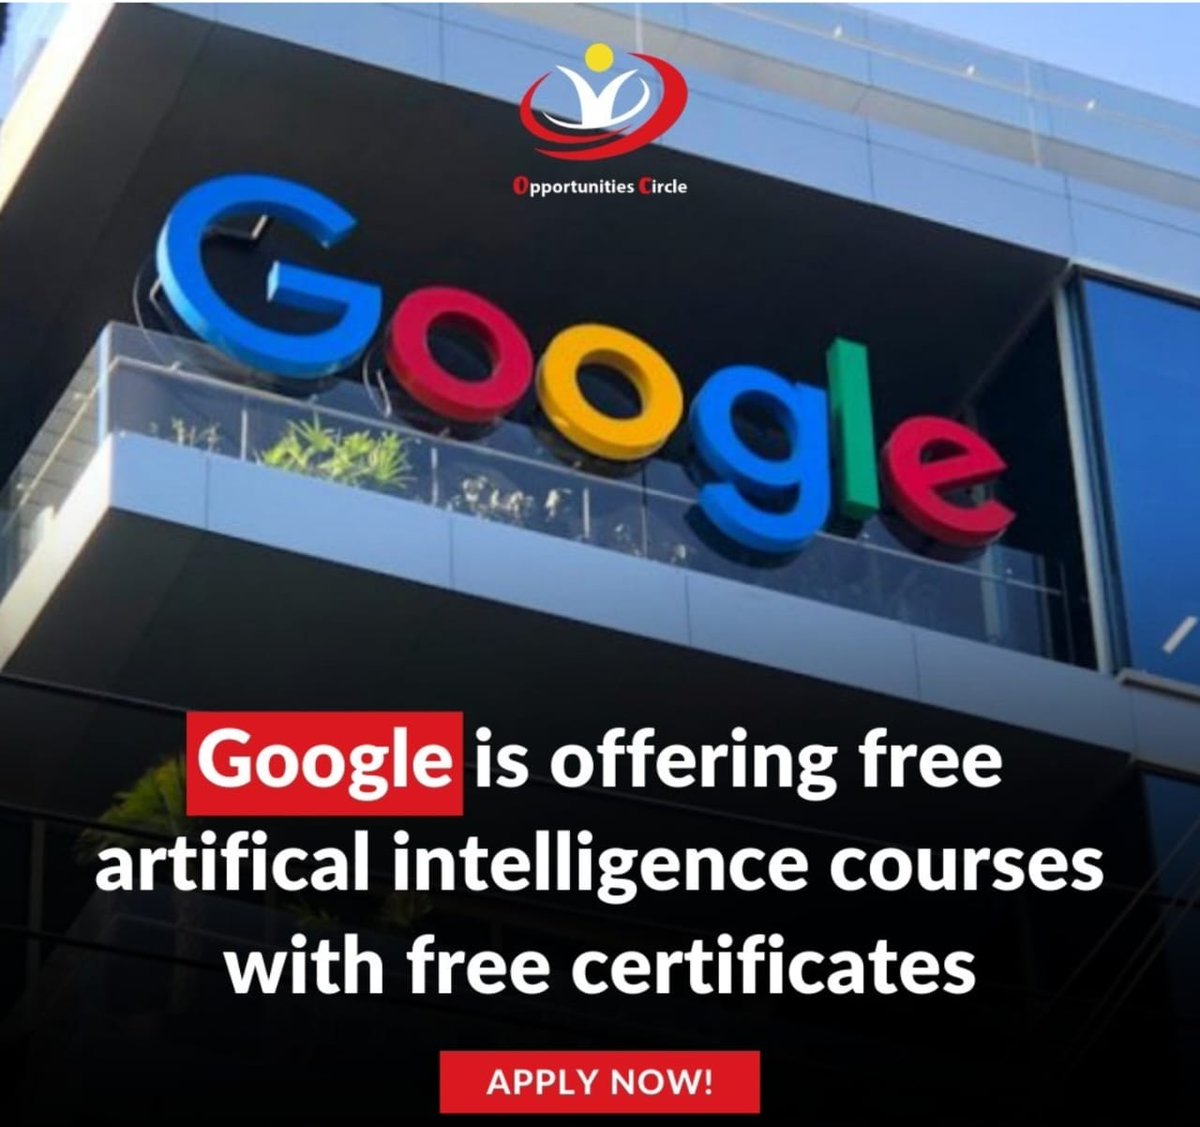 عاااجل 🔥

١- جوجل  اعلنت عن منهج تعليمي مجاني 100%  - لتطبيقات الذكاء الإصطناعي من البداية للنهاية 

عباره عن ٩ كورسات، فرصة عظيمه فعلا لتعلم الذكاء الاصطناعي التوليدي من خلال كورسات جوجل المعتمدة والمجانية
تااابع 👇